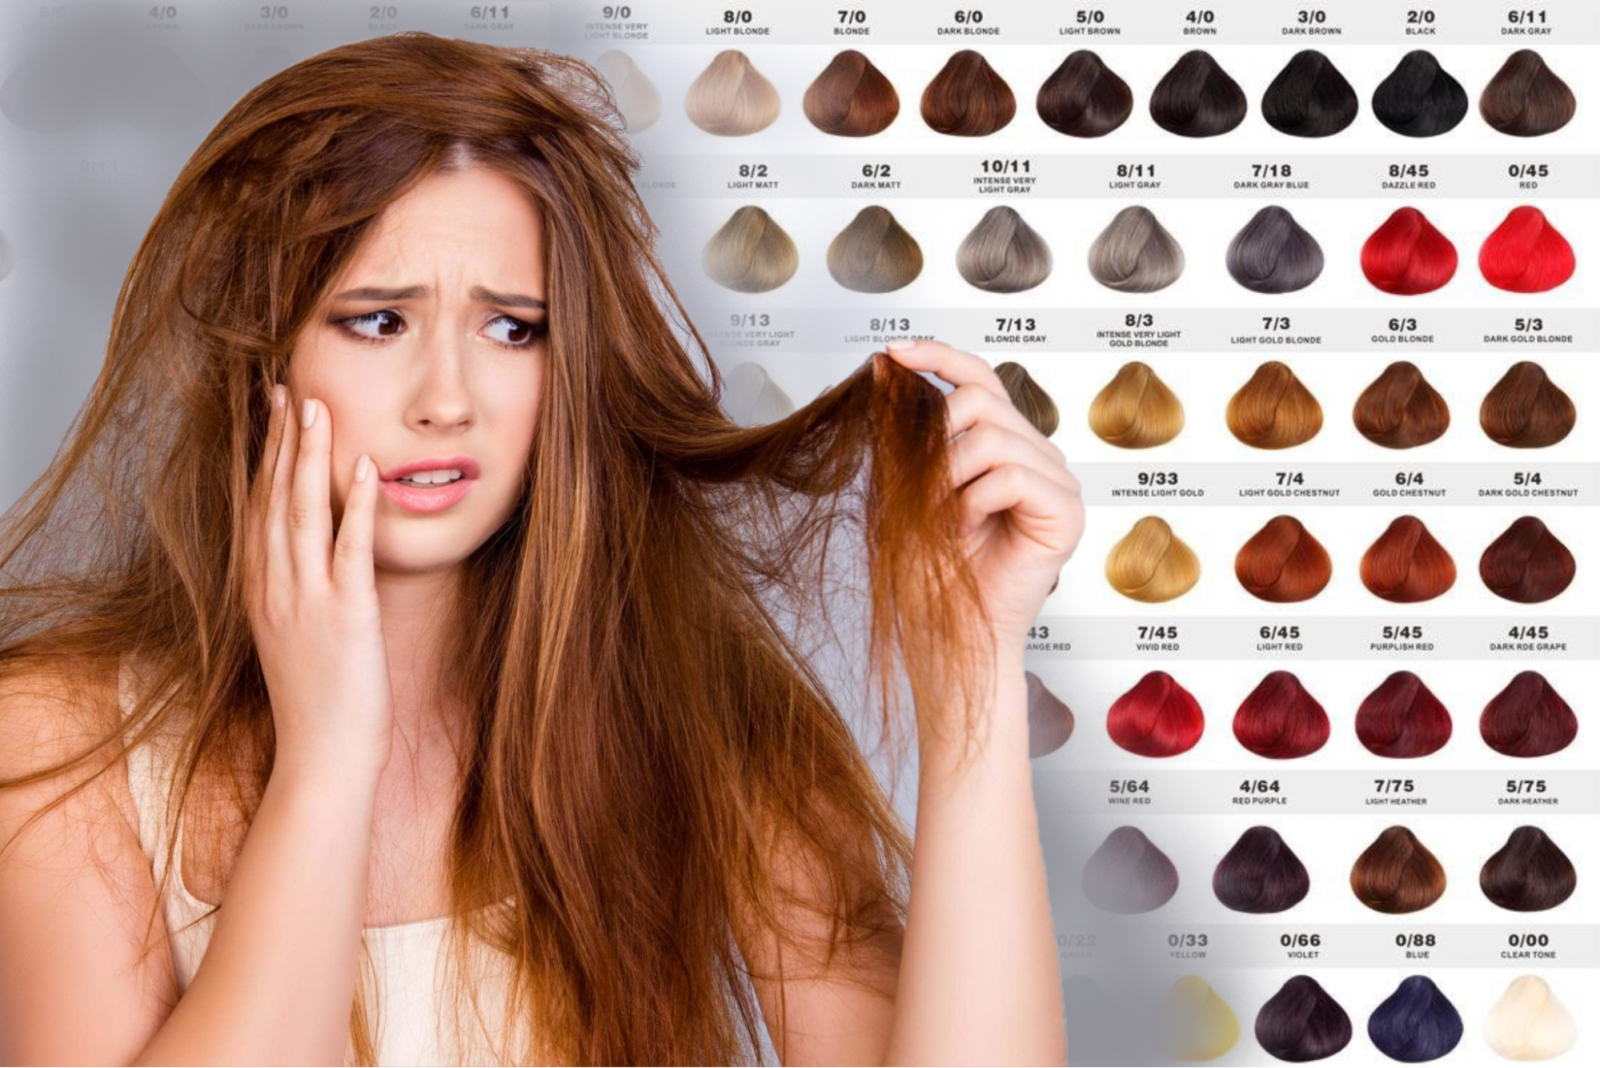 Tóc yếu nên nhuộm màu gì? Làm sao để tóc chắc khỏe hơn?